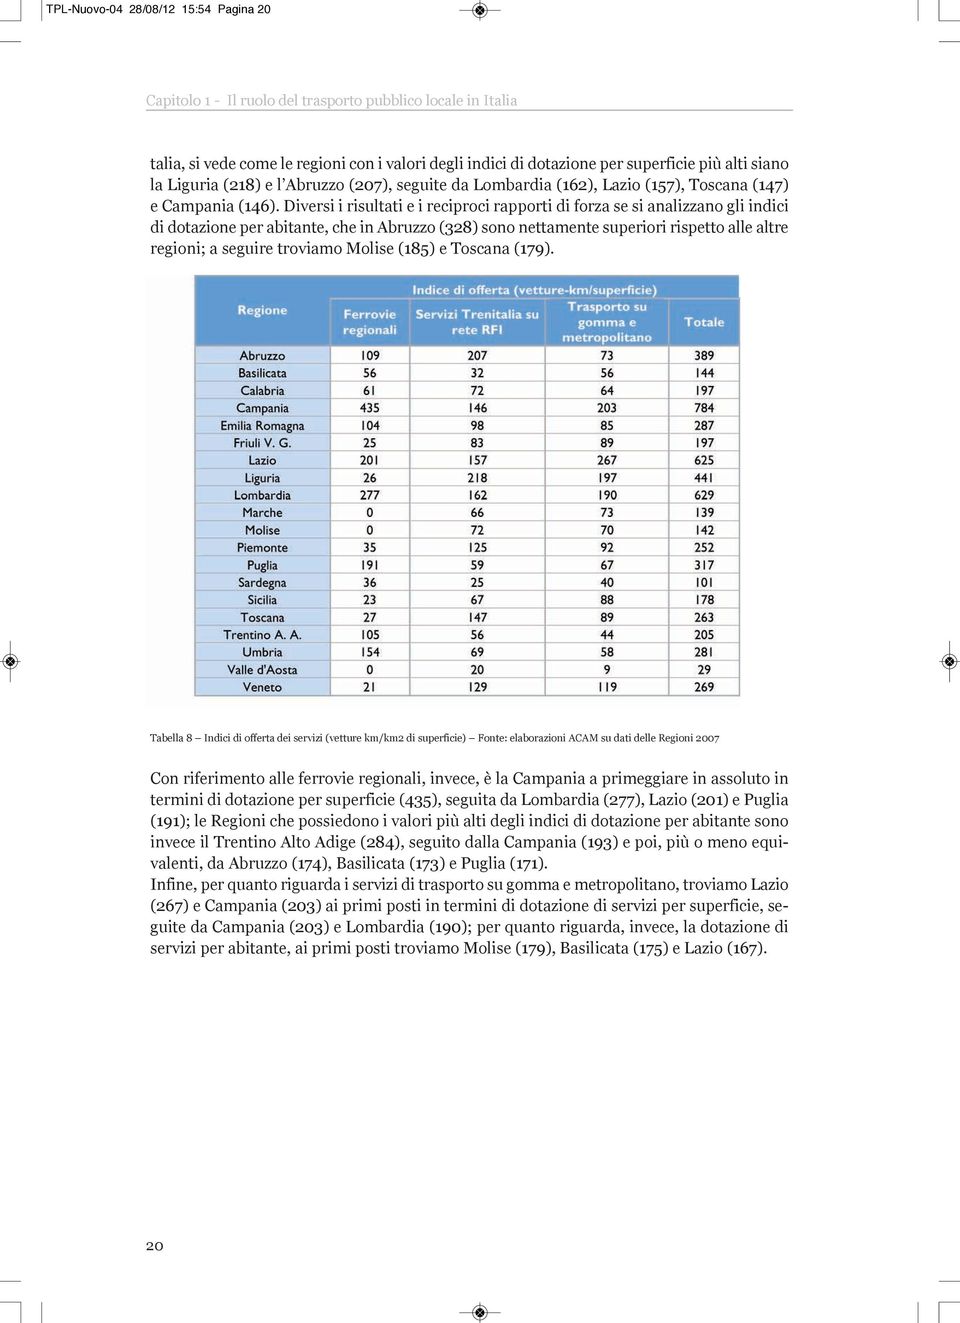 Diversi i risultati e i reciproci rapporti di forza se si analizzano gli indici di dotazione per abitante, che in Abruzzo (328) sono nettamente superiori rispetto alle altre regioni; a seguire